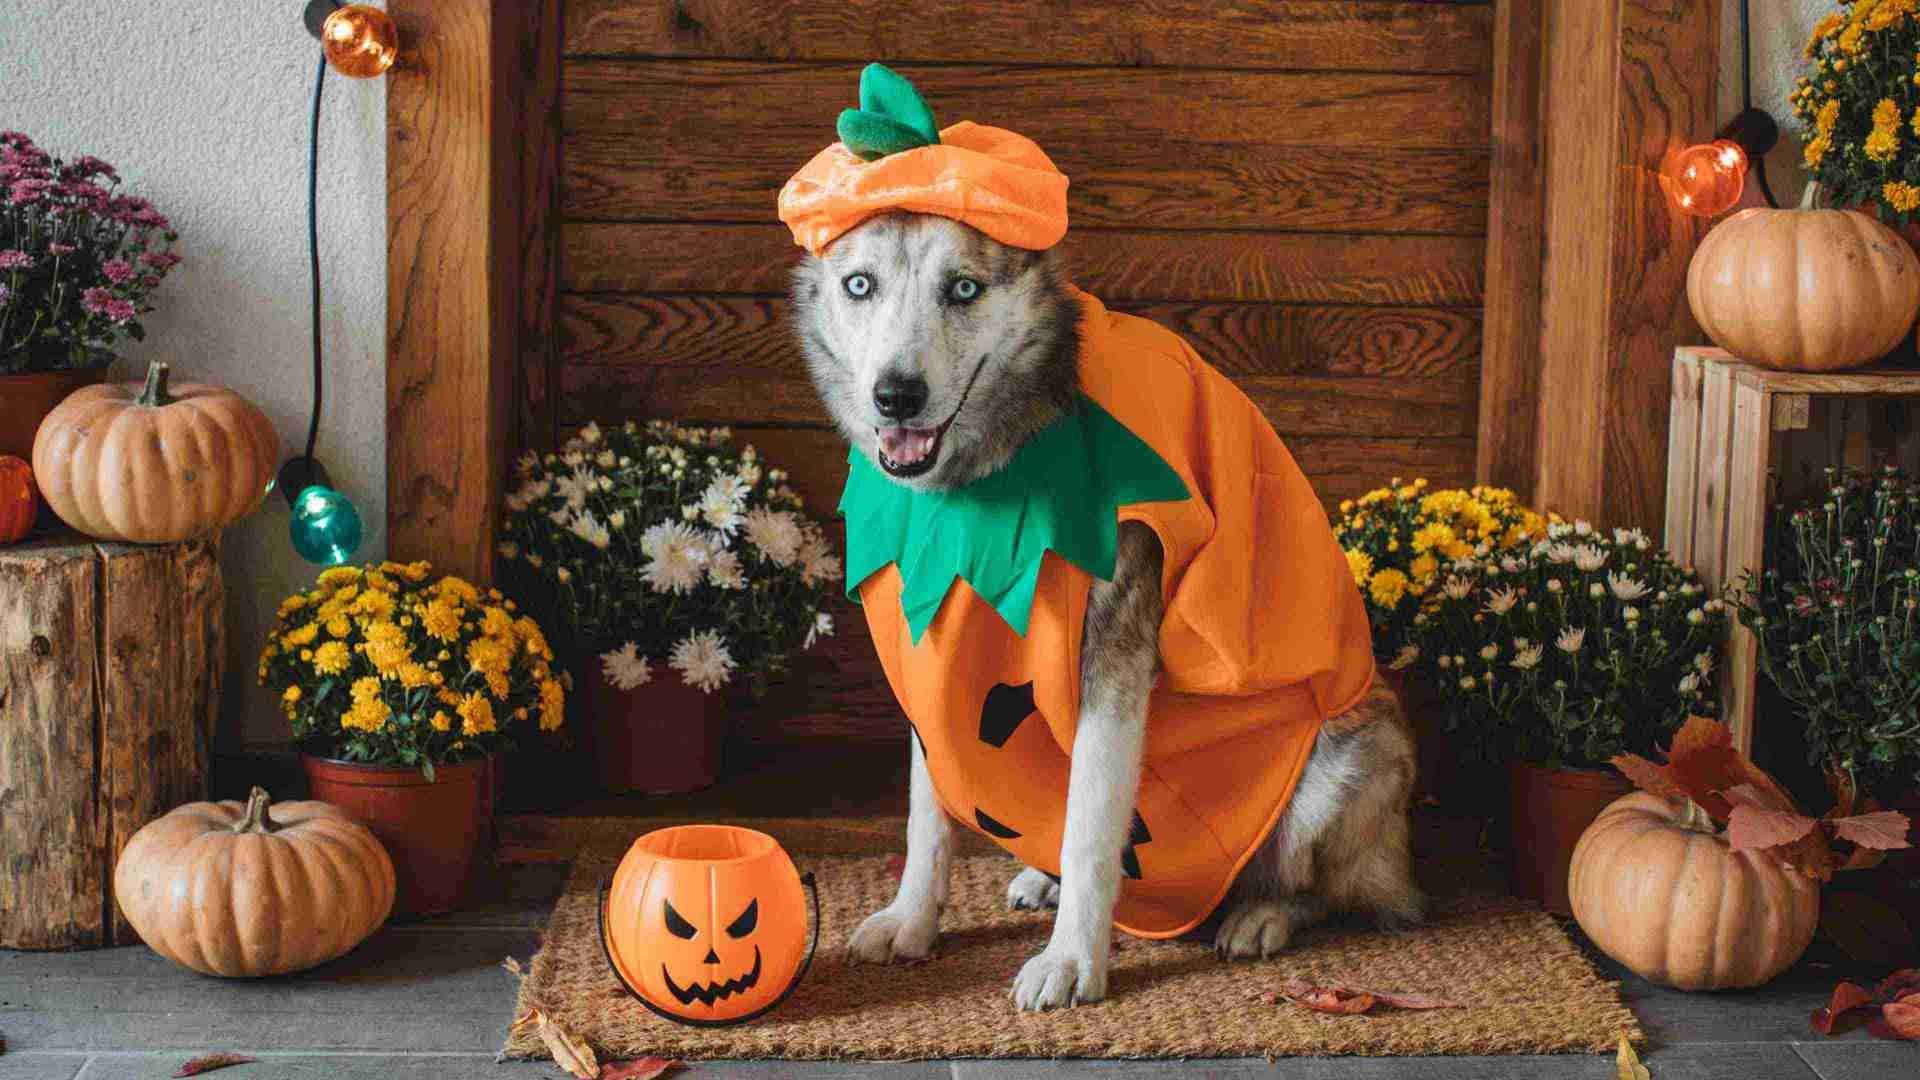 Pet's Halloween costume fun Wallpaper